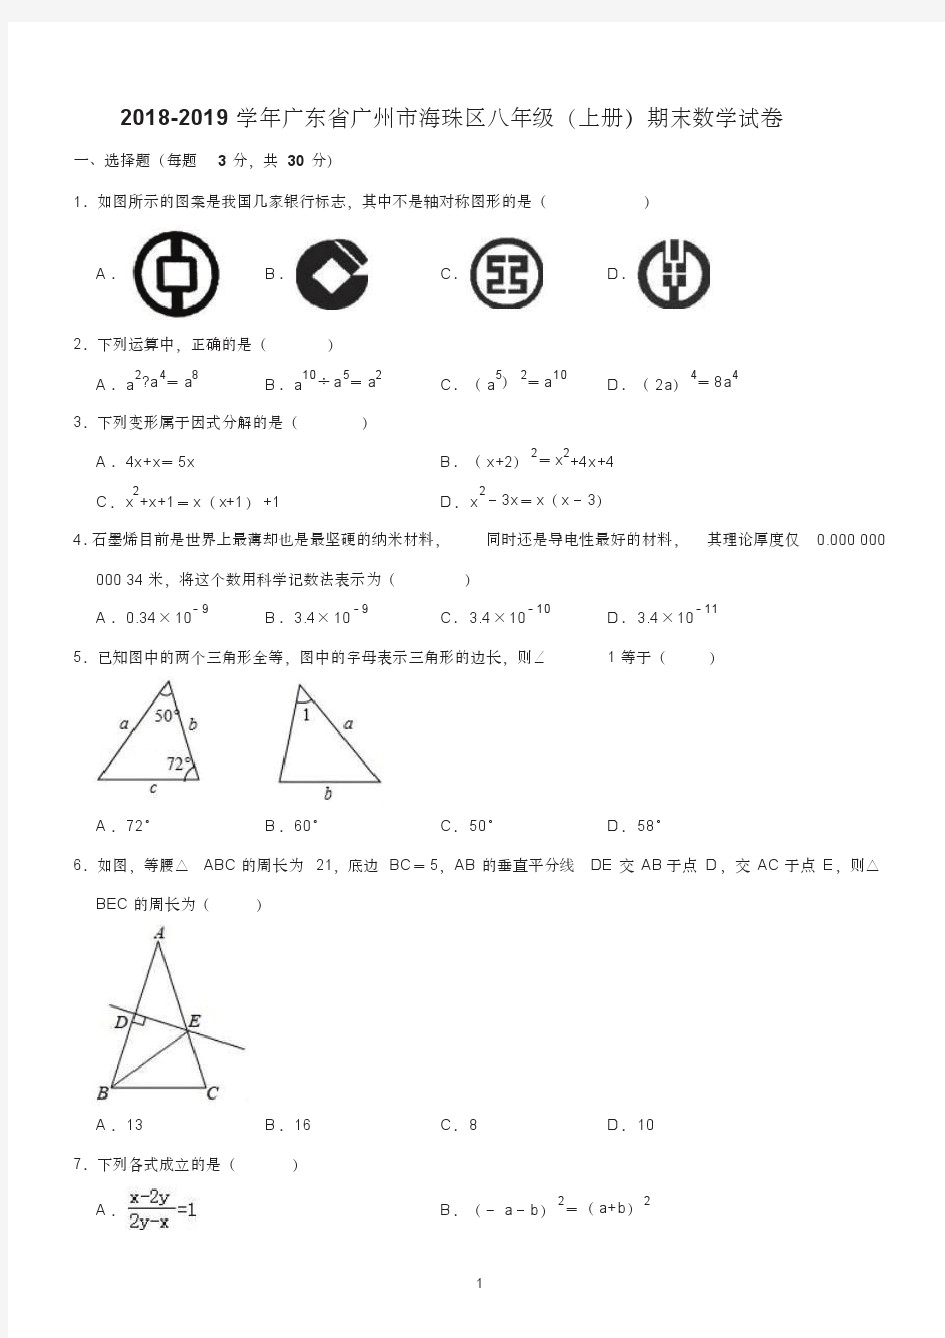 广州市八年级上册期末考试数学试卷含答案(共3套)